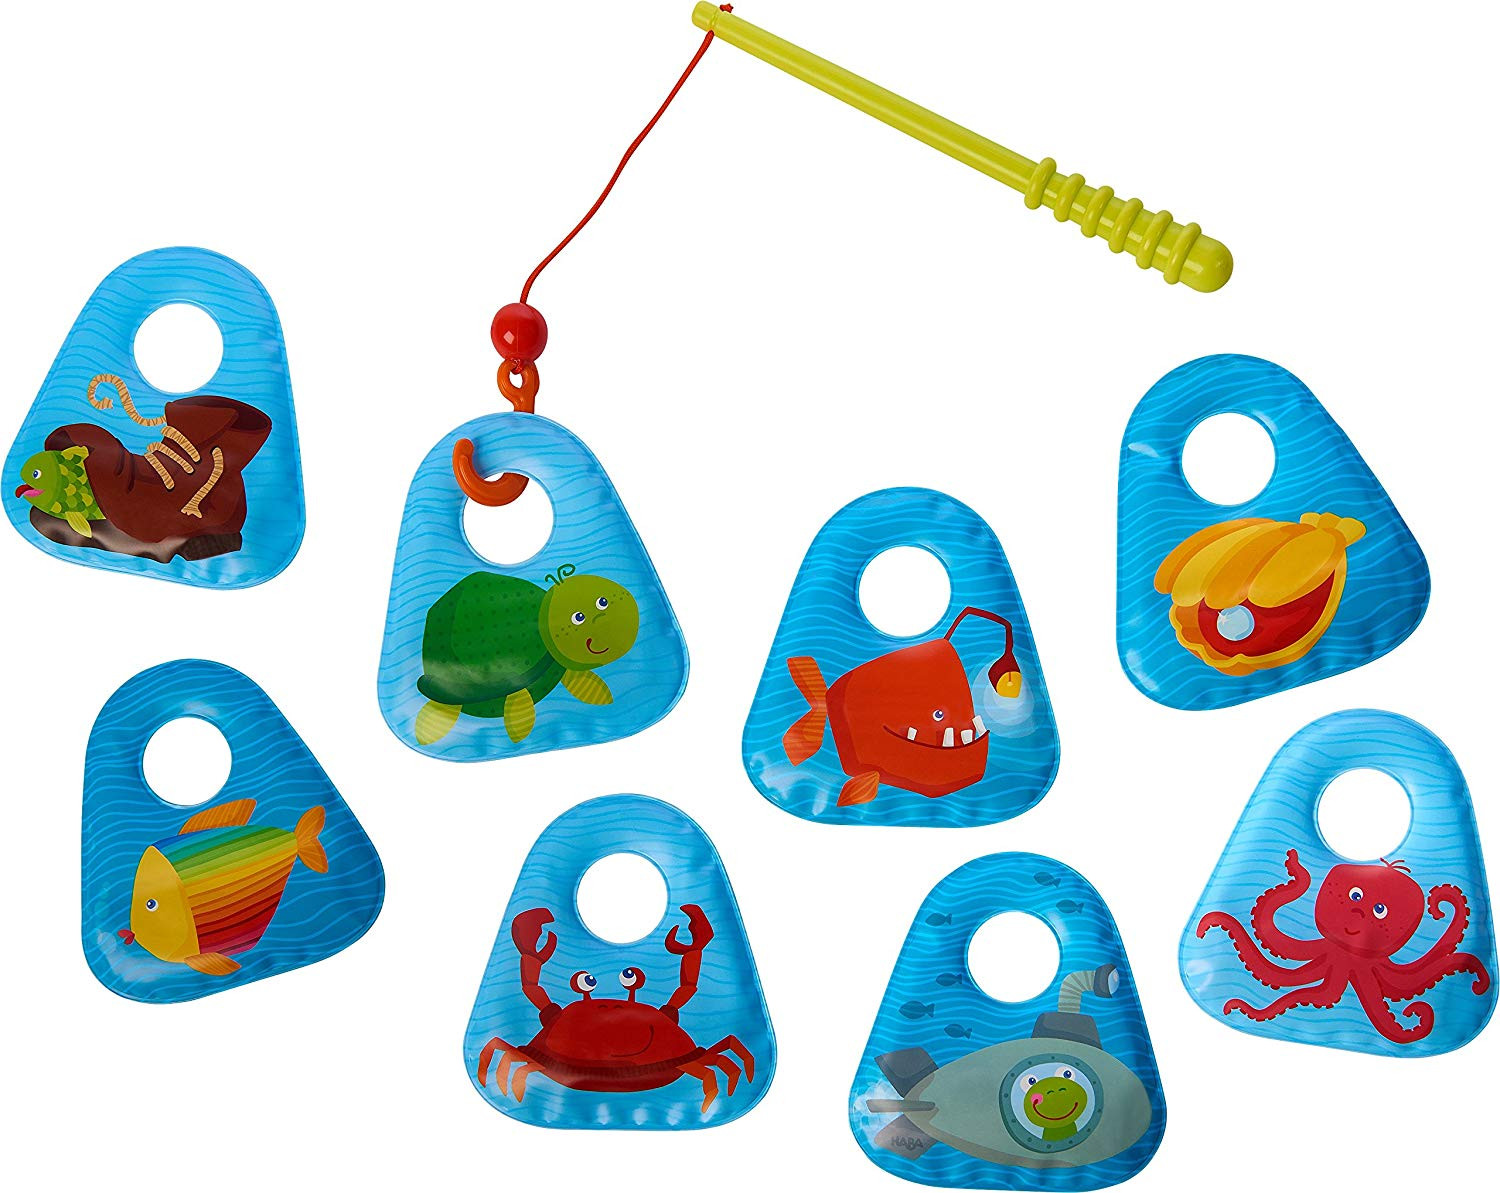 Angelspiel Fisch Kinder Angeln Angel Set Spielzeug Magnet Angelset Badespielzeug 